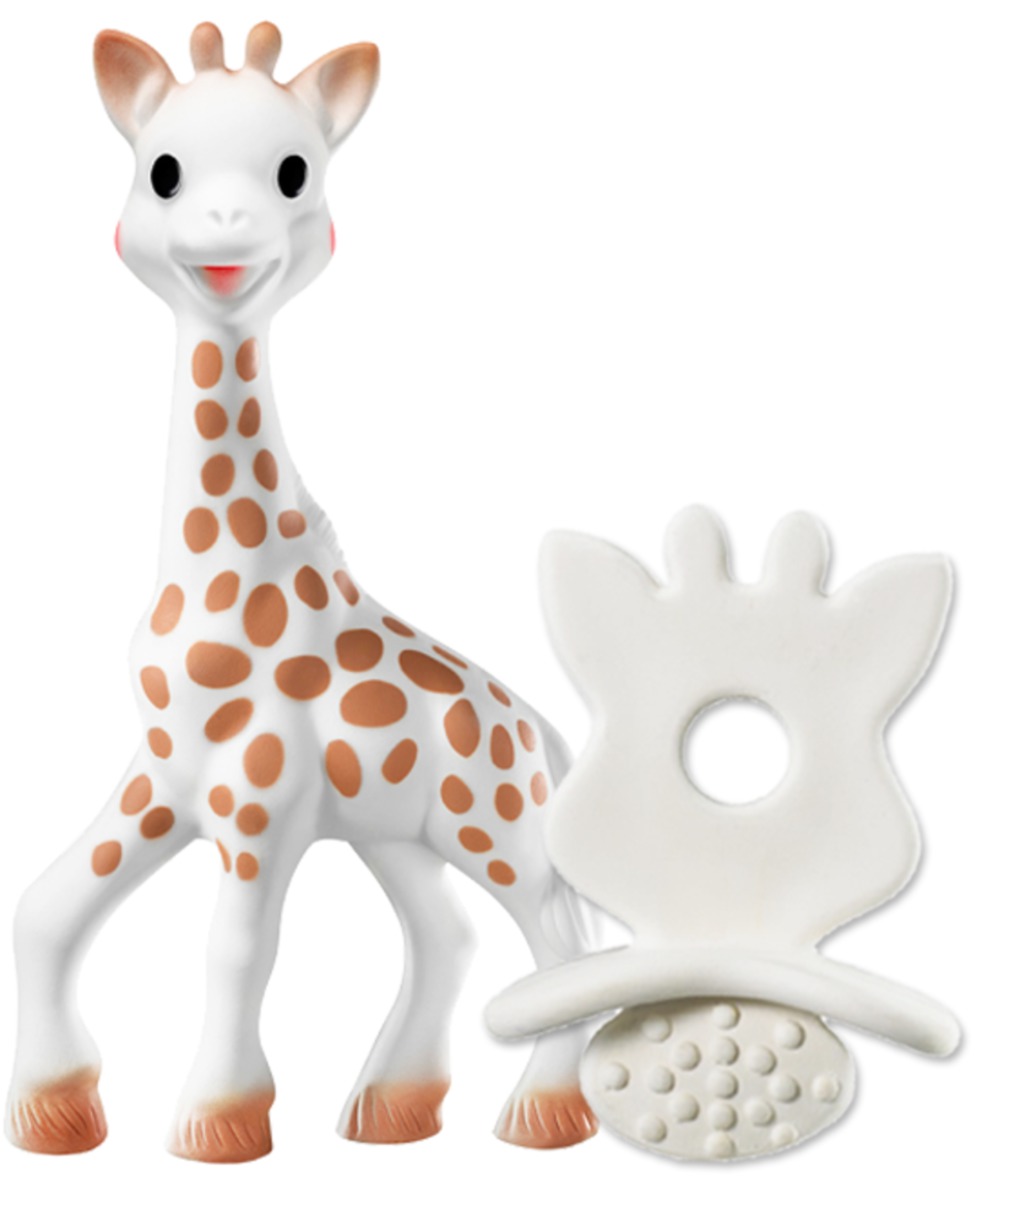 Sophie la girafe + mordedor - SOPHIE LA GIRAFE